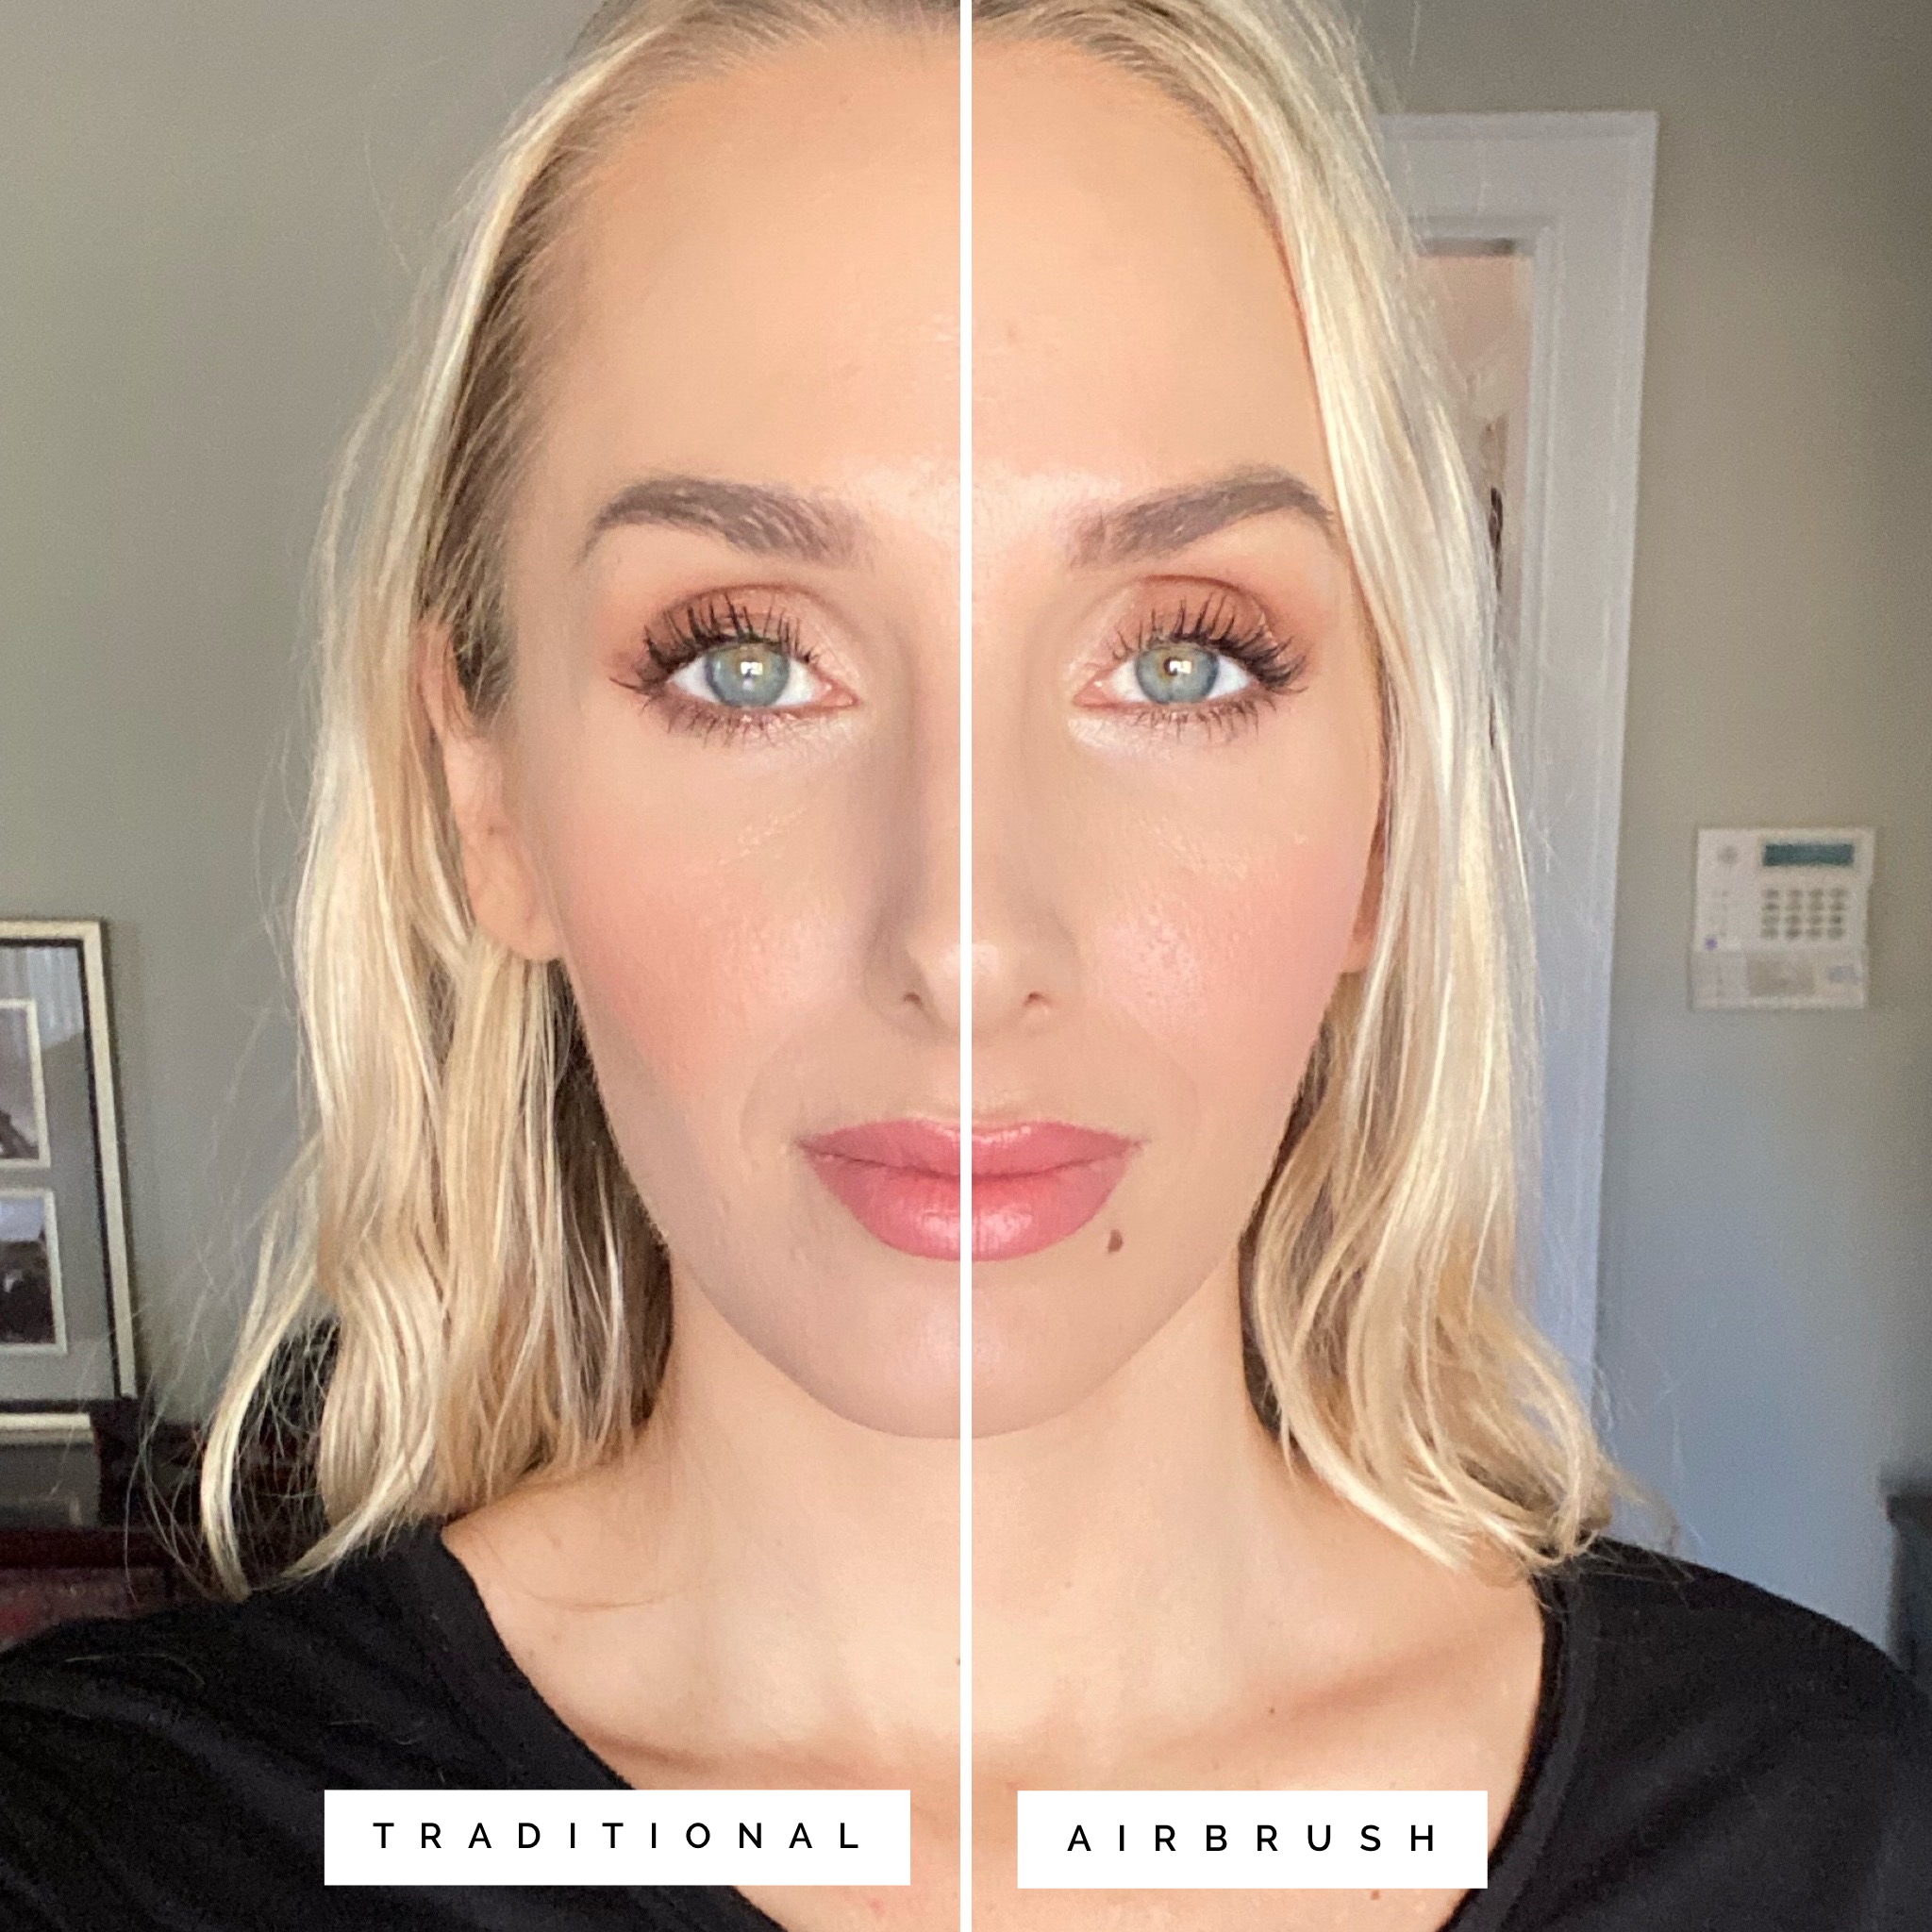 airbrush vs regular makeup